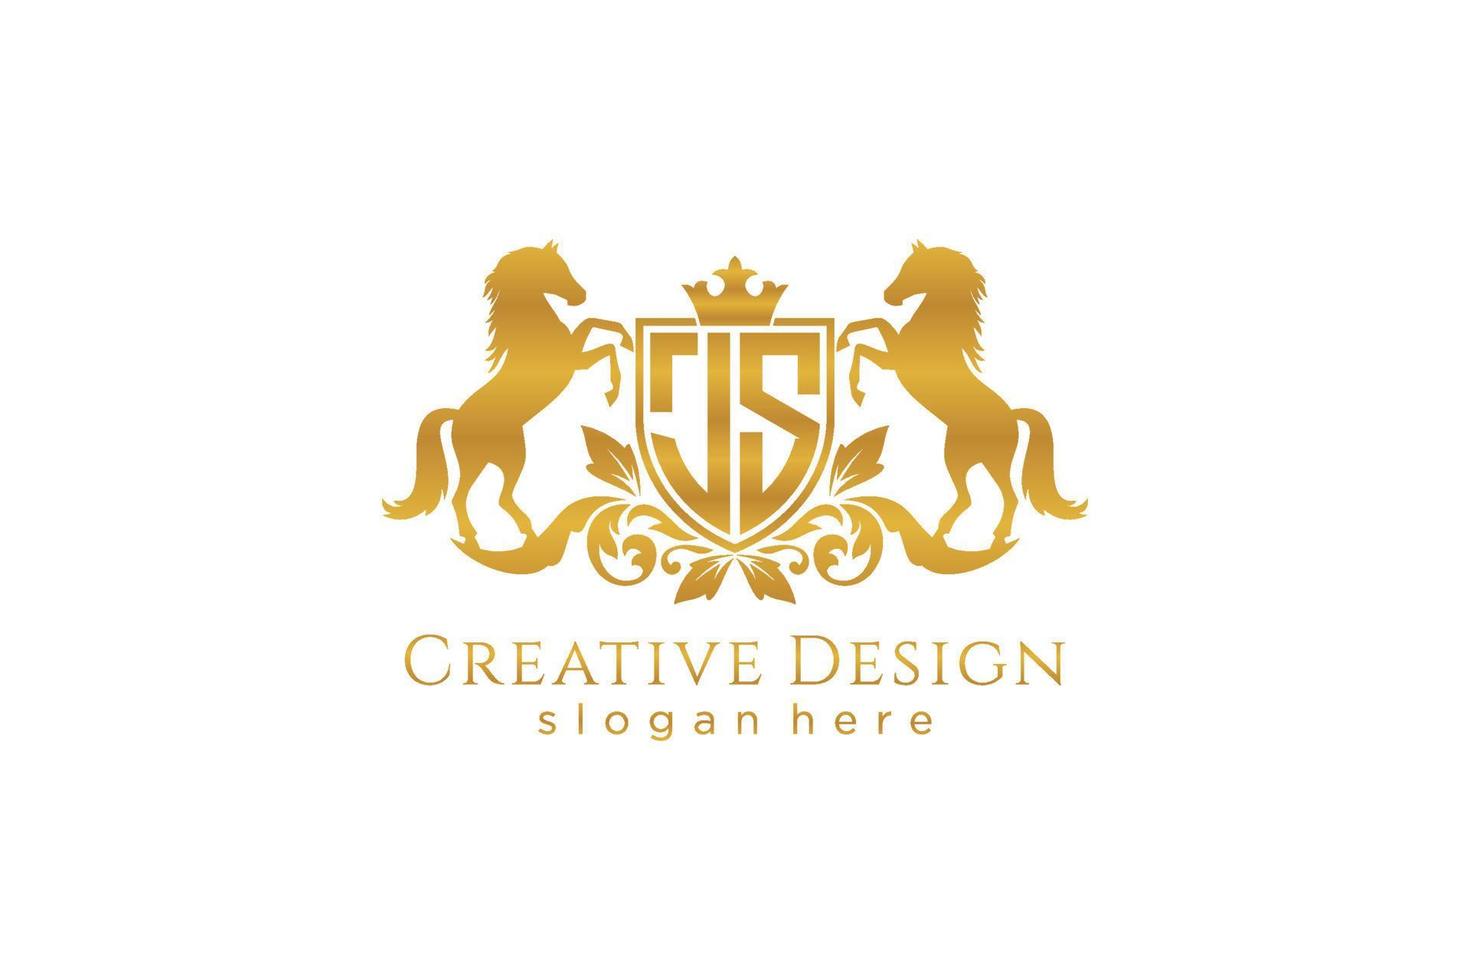 cresta dorada retro js inicial con escudo y dos caballos, plantilla de insignia con pergaminos y corona real - perfecto para proyectos de marca de lujo vector